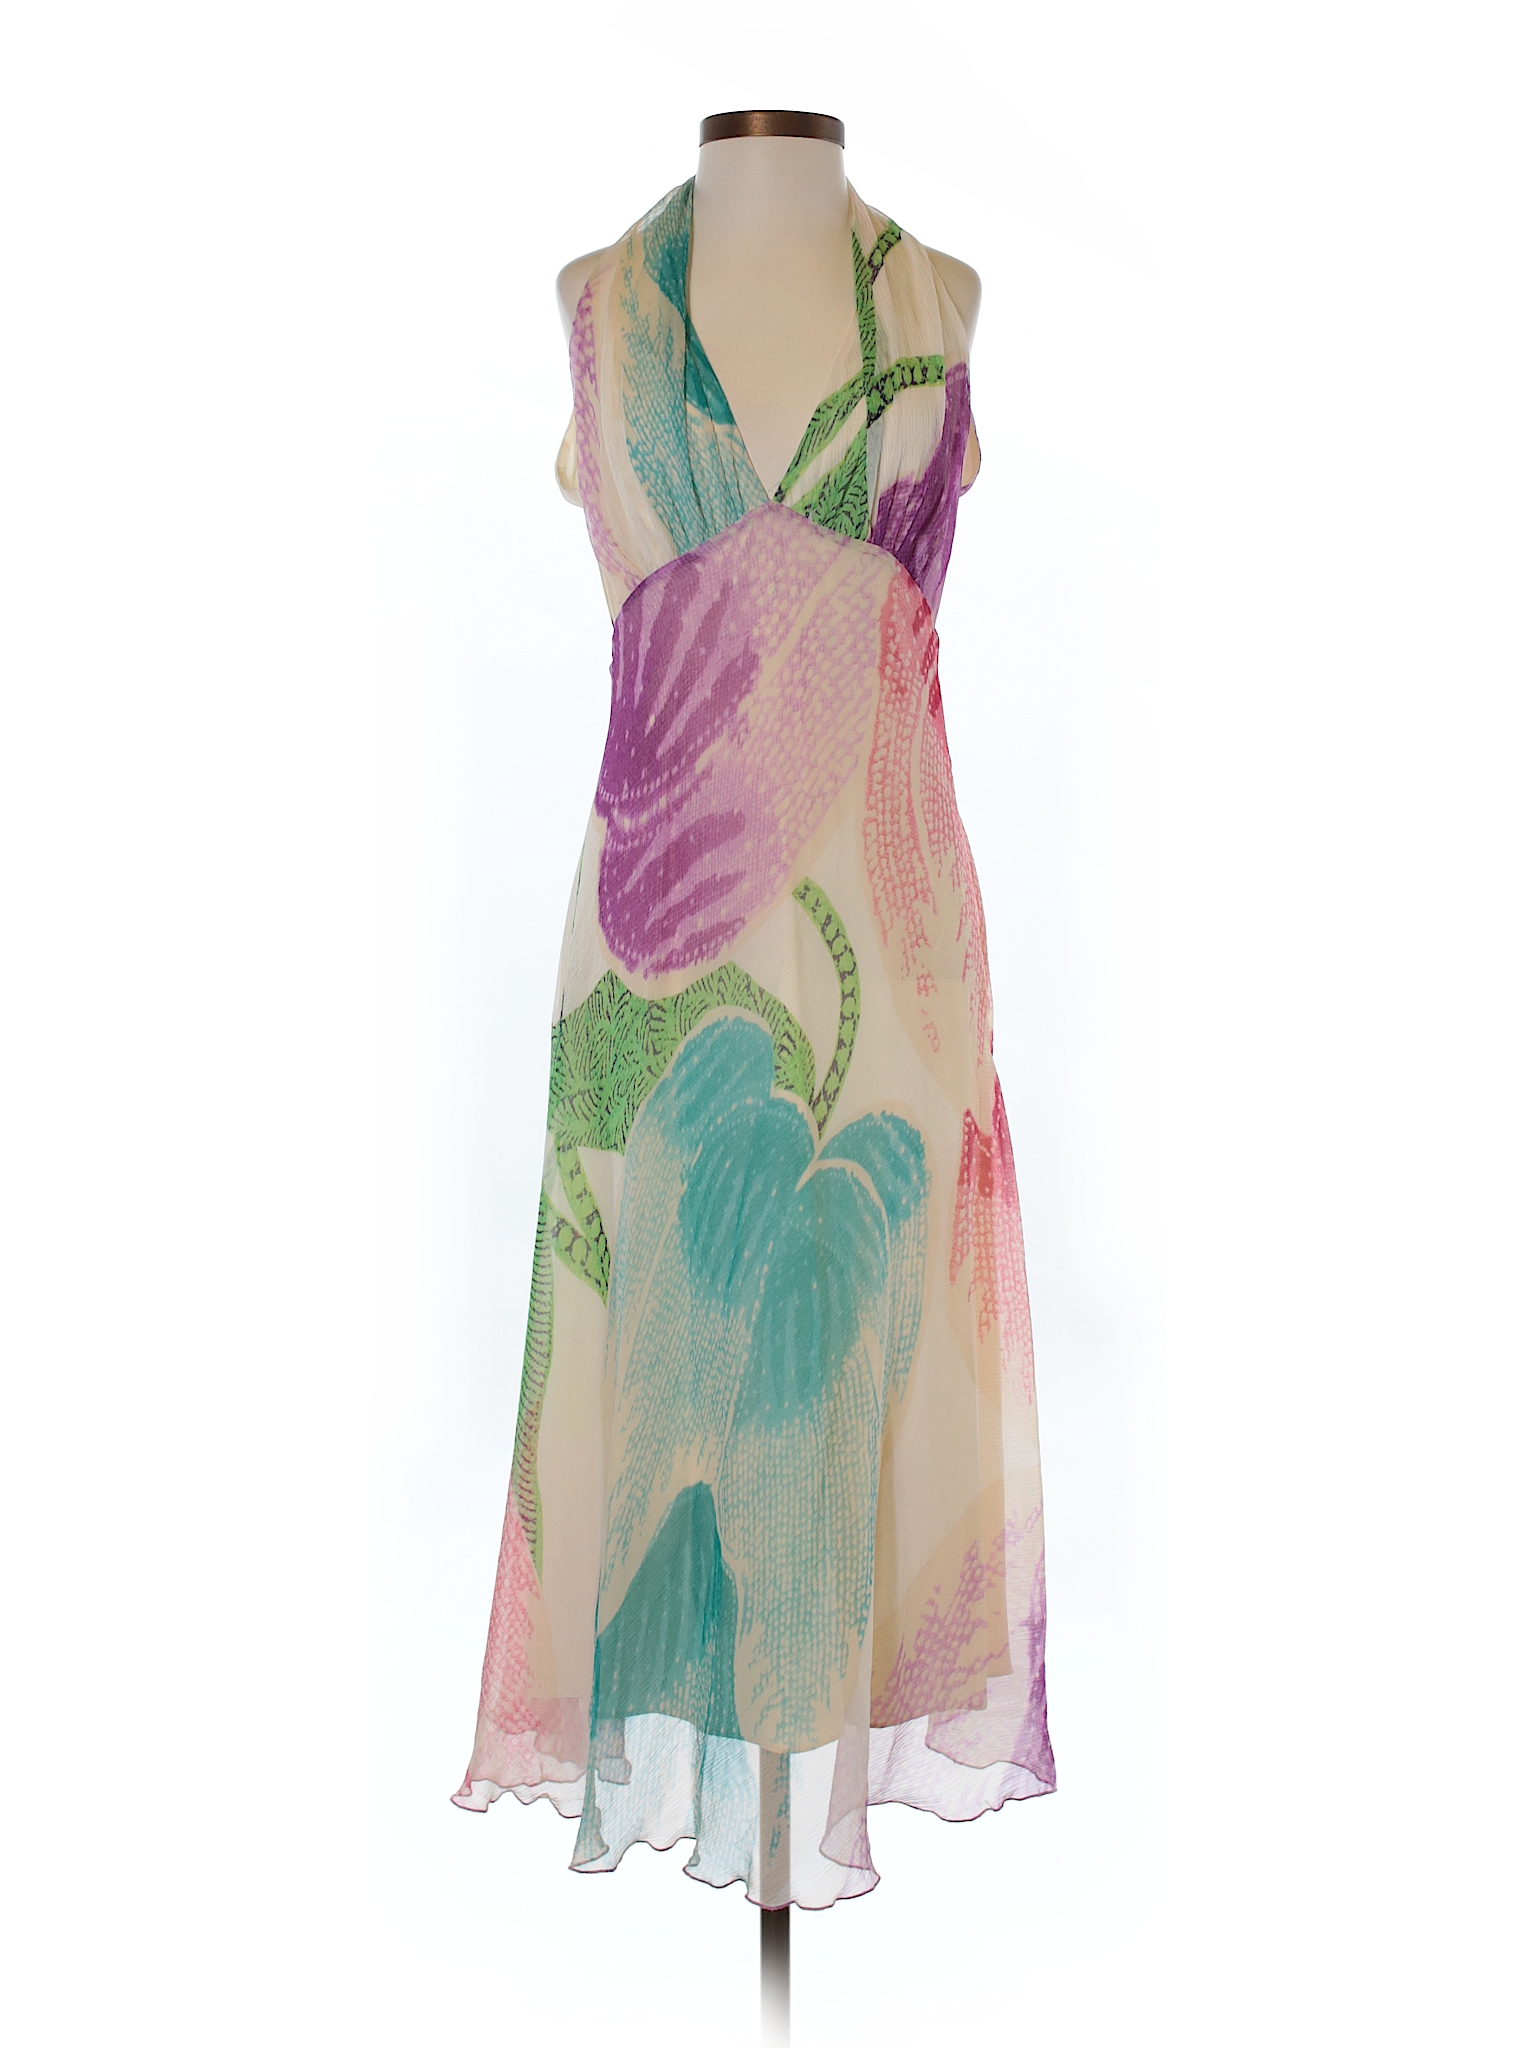 Diane Von Furstenberg Silk Dress - 79% off only on thredUP